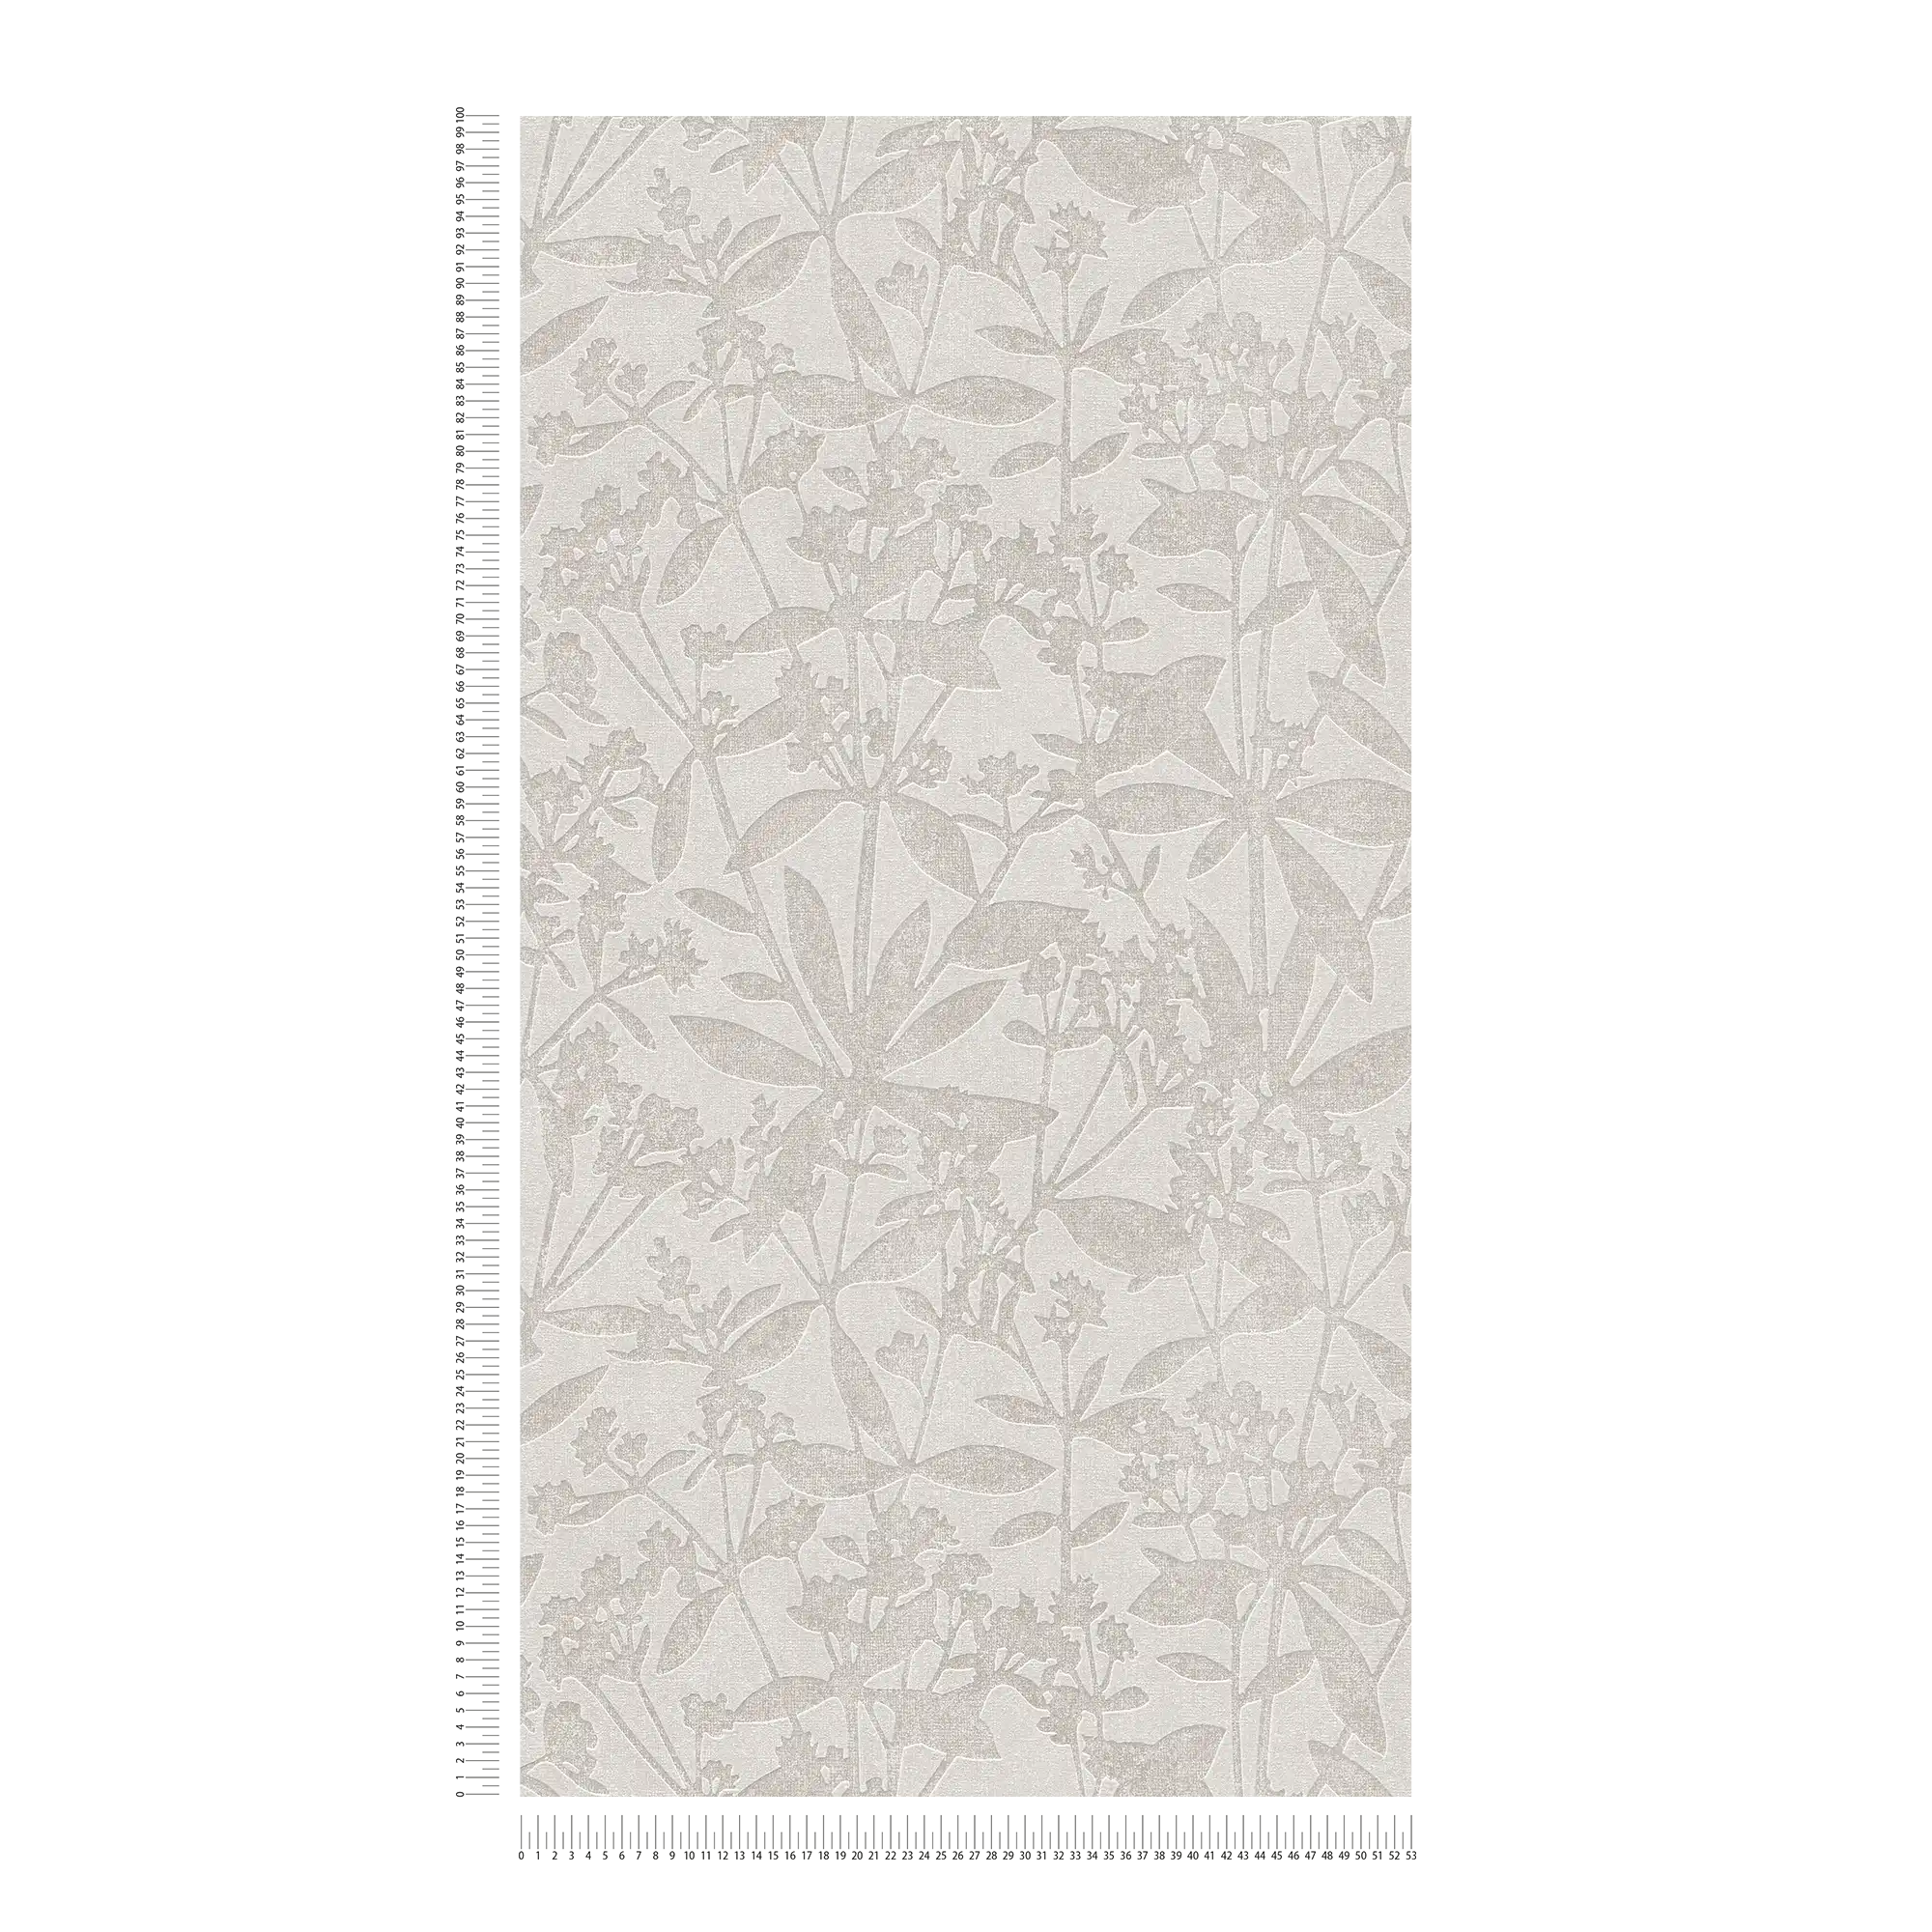             Papel pintado no tejido de flores y hojas - gris, beige
        